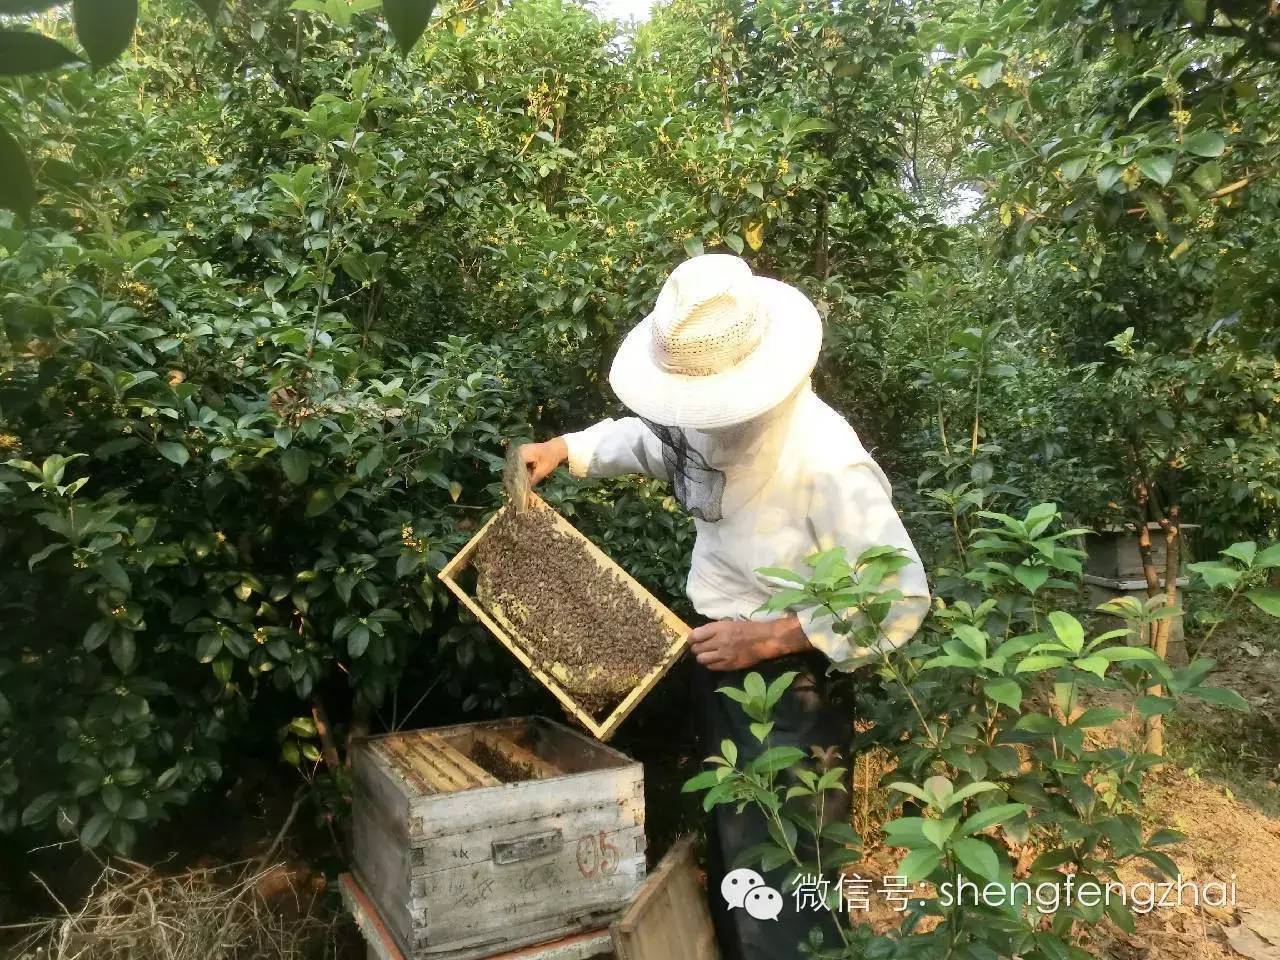 技术 农大蜂蜜 蜂胶的作用与功效 蜂蜡的作用与功效 蜂蜜柠檬茶